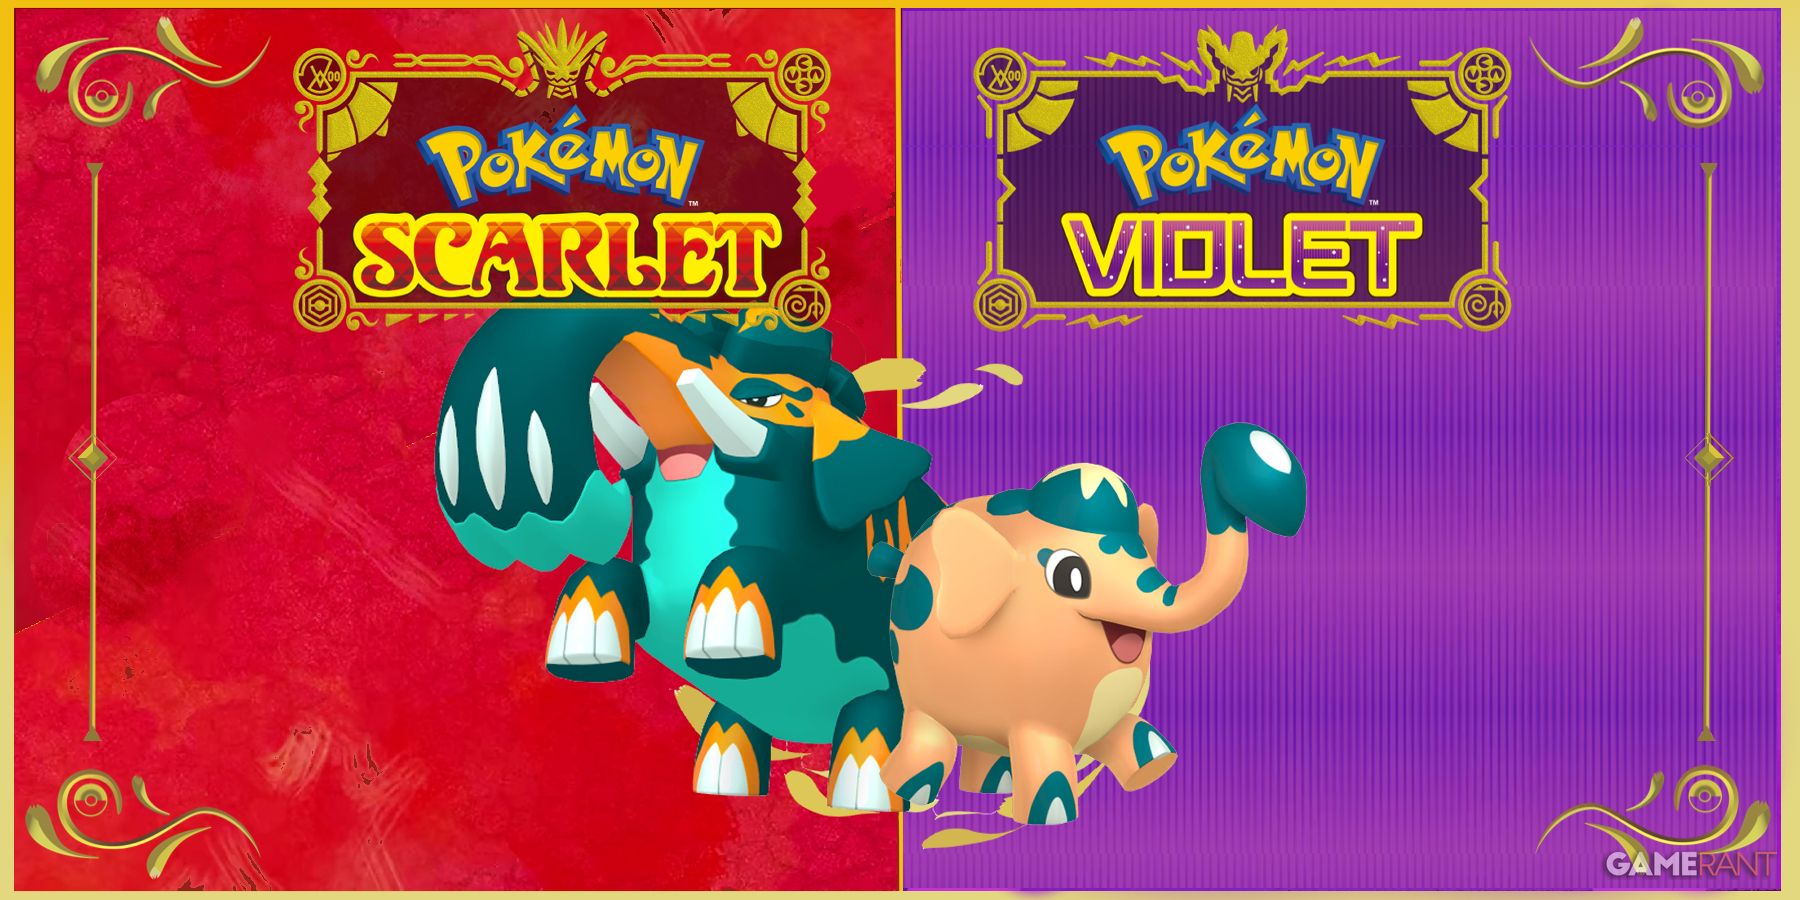 Como evoluir Pawmo em Pokémon Scarlet & Violet